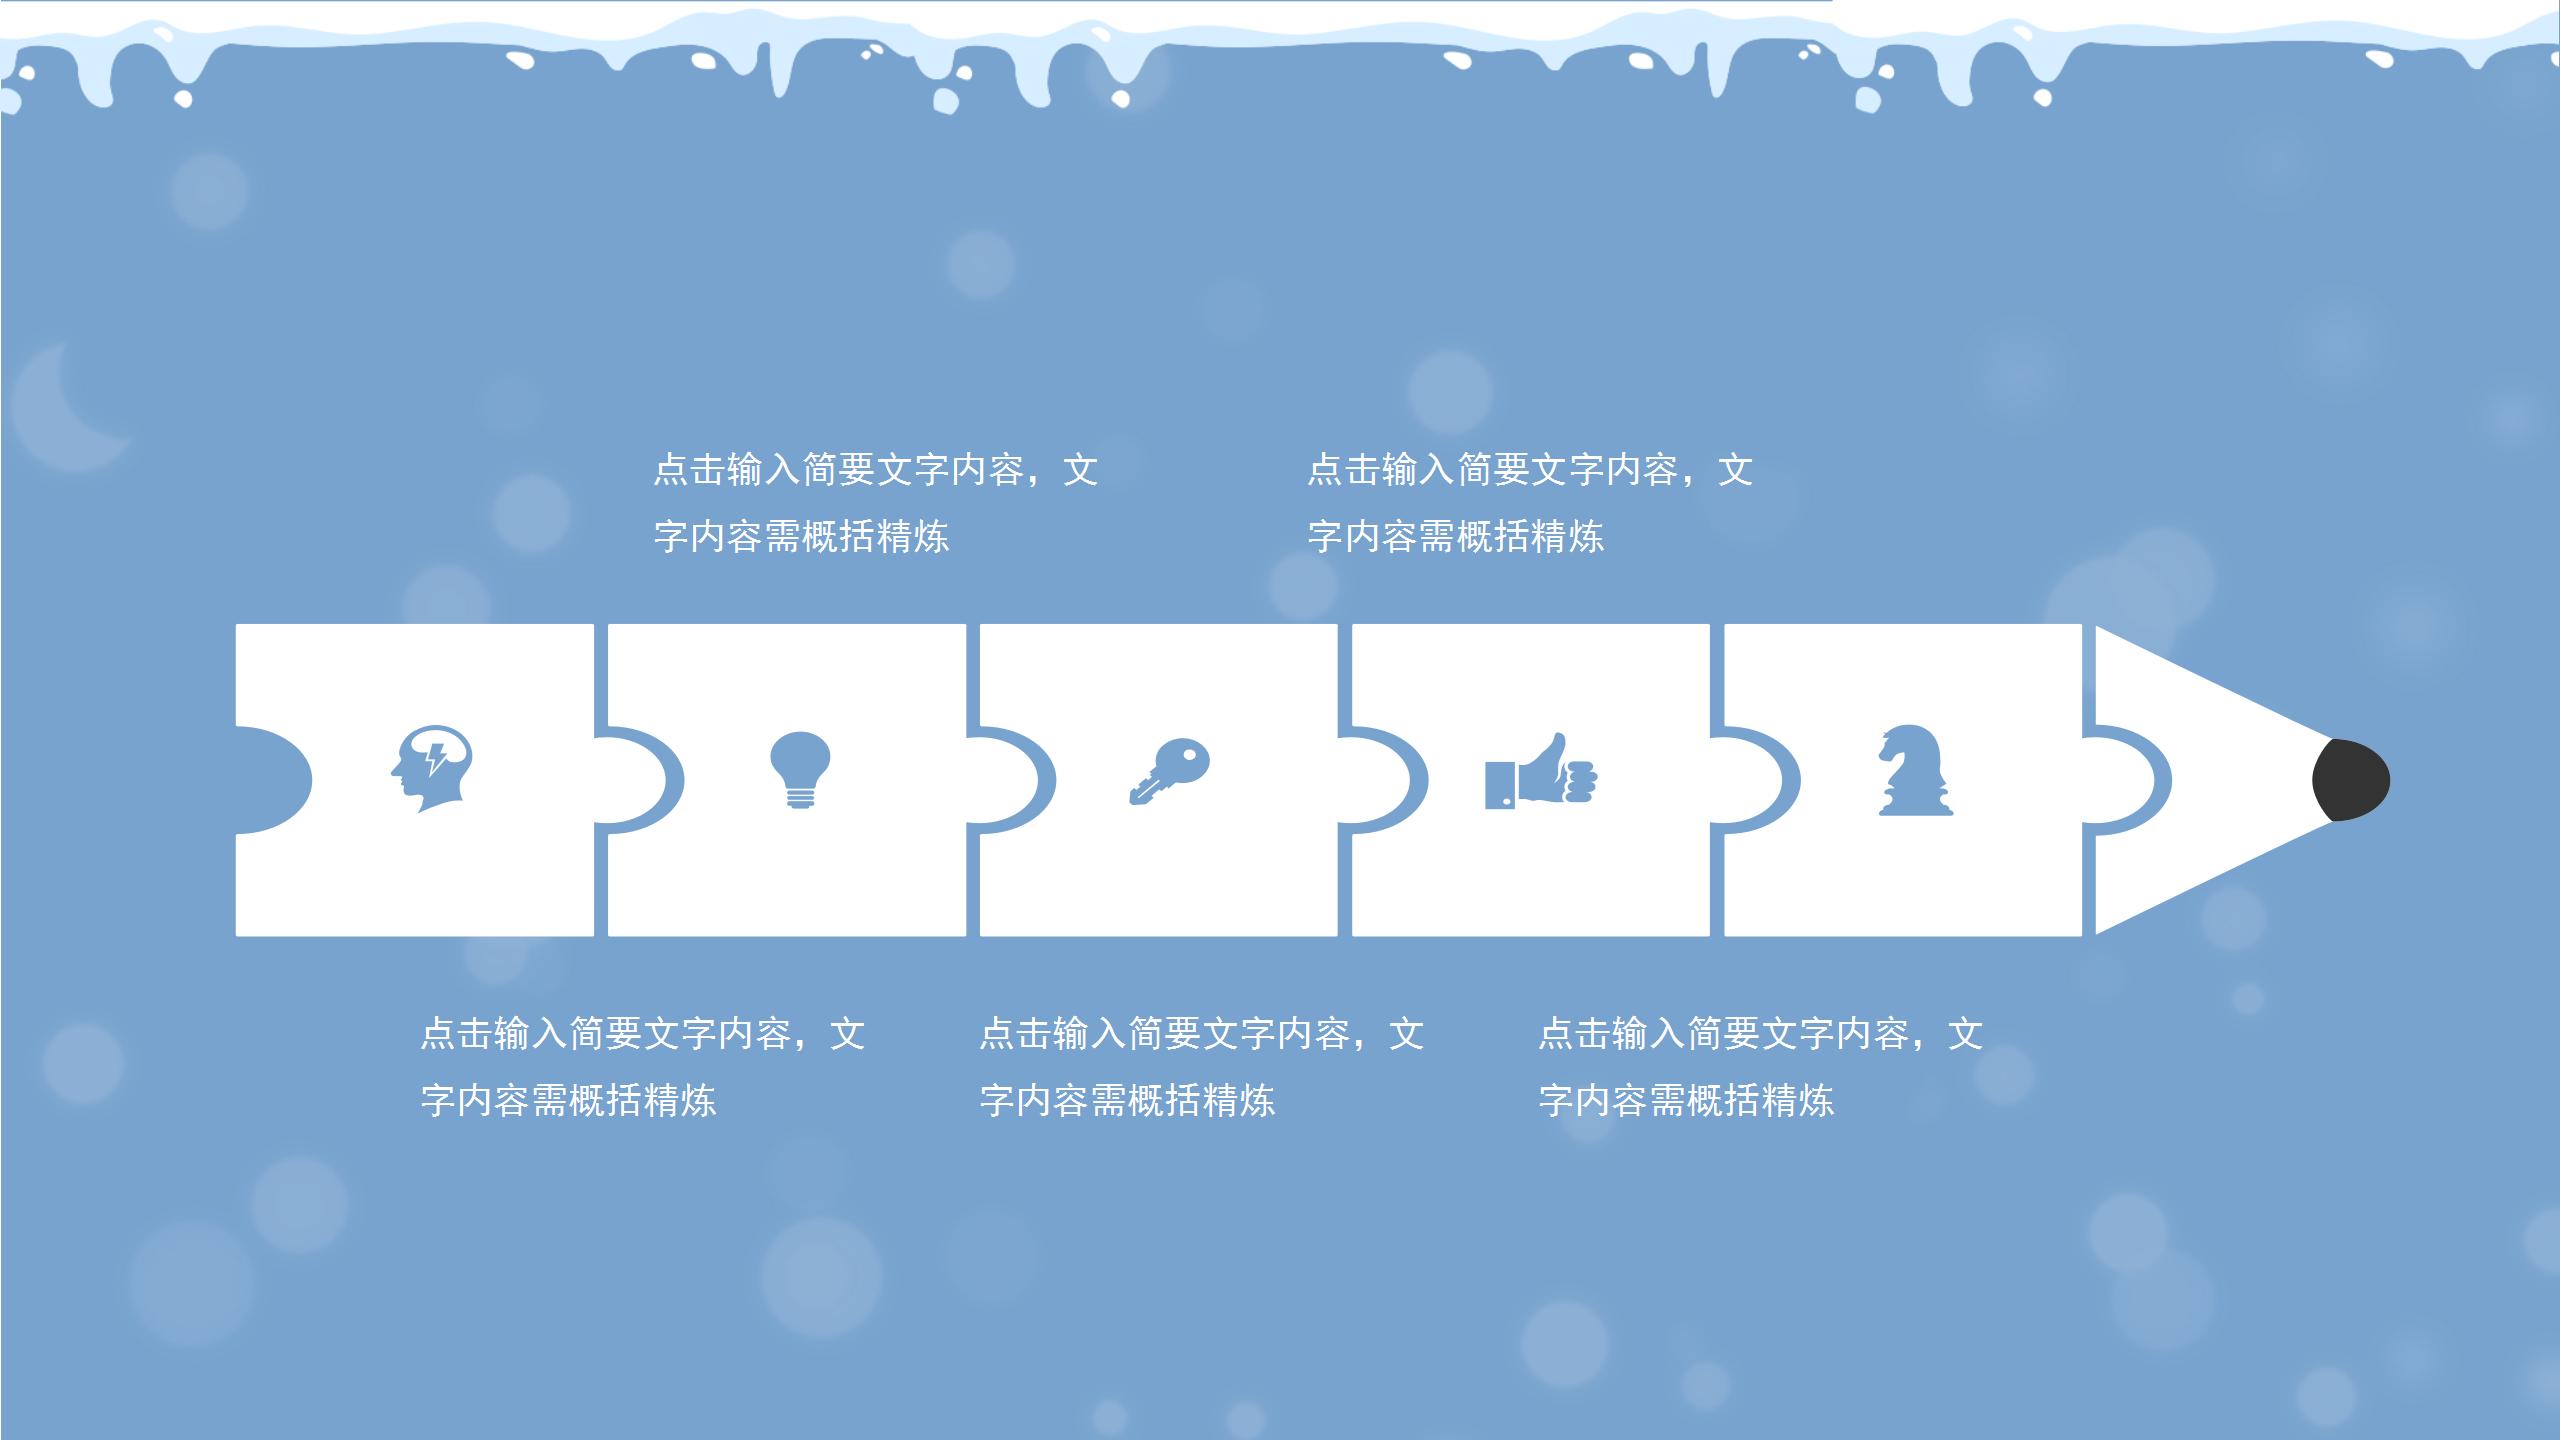 蓝色雪景简约卡通寒假计划生活记录假期生活主题PPT模板